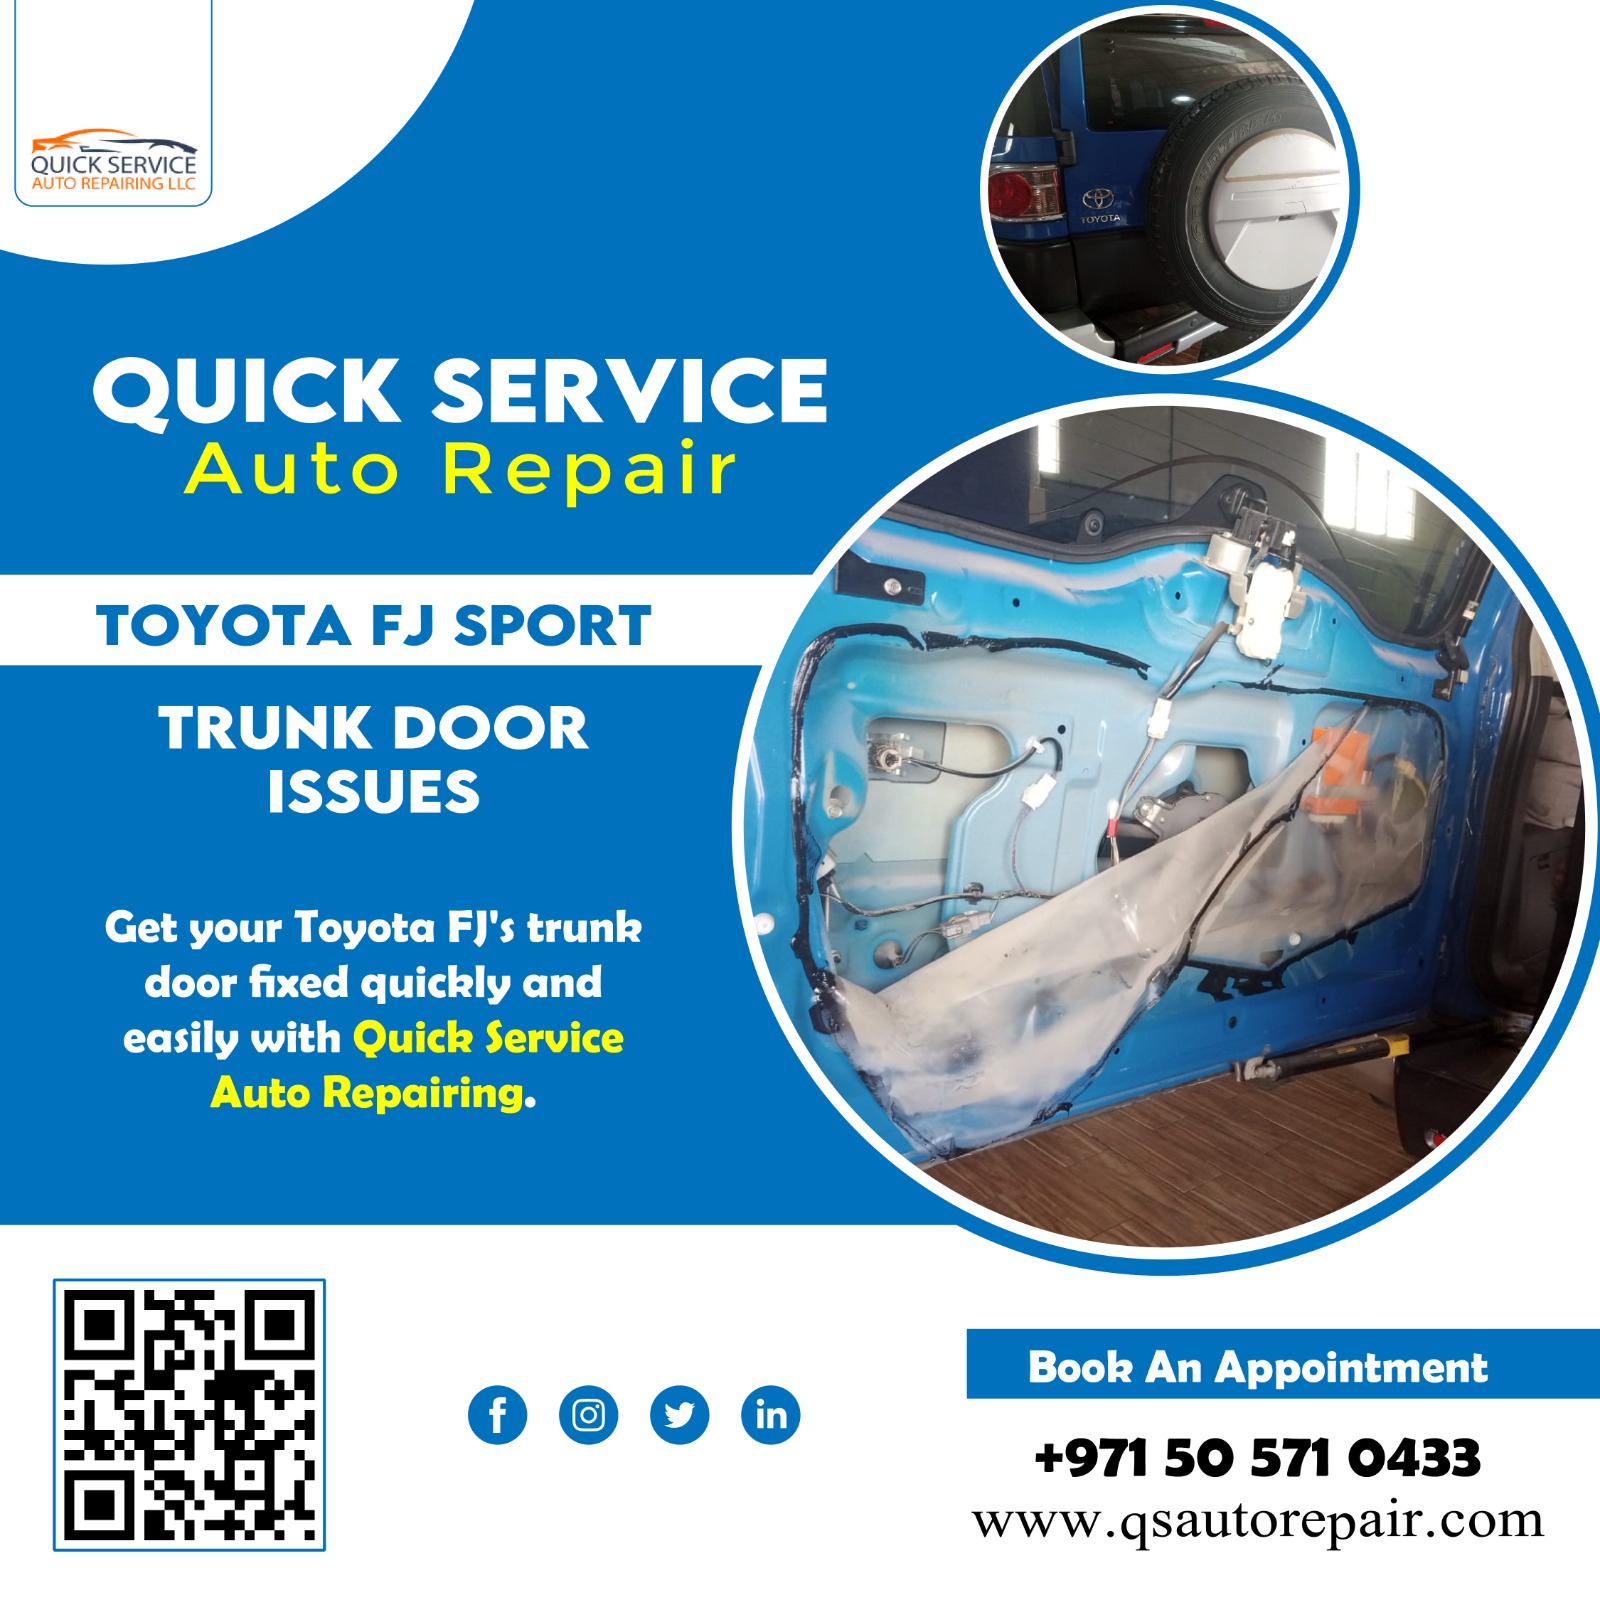 Toyota FJ Sport Trunk Door Issues